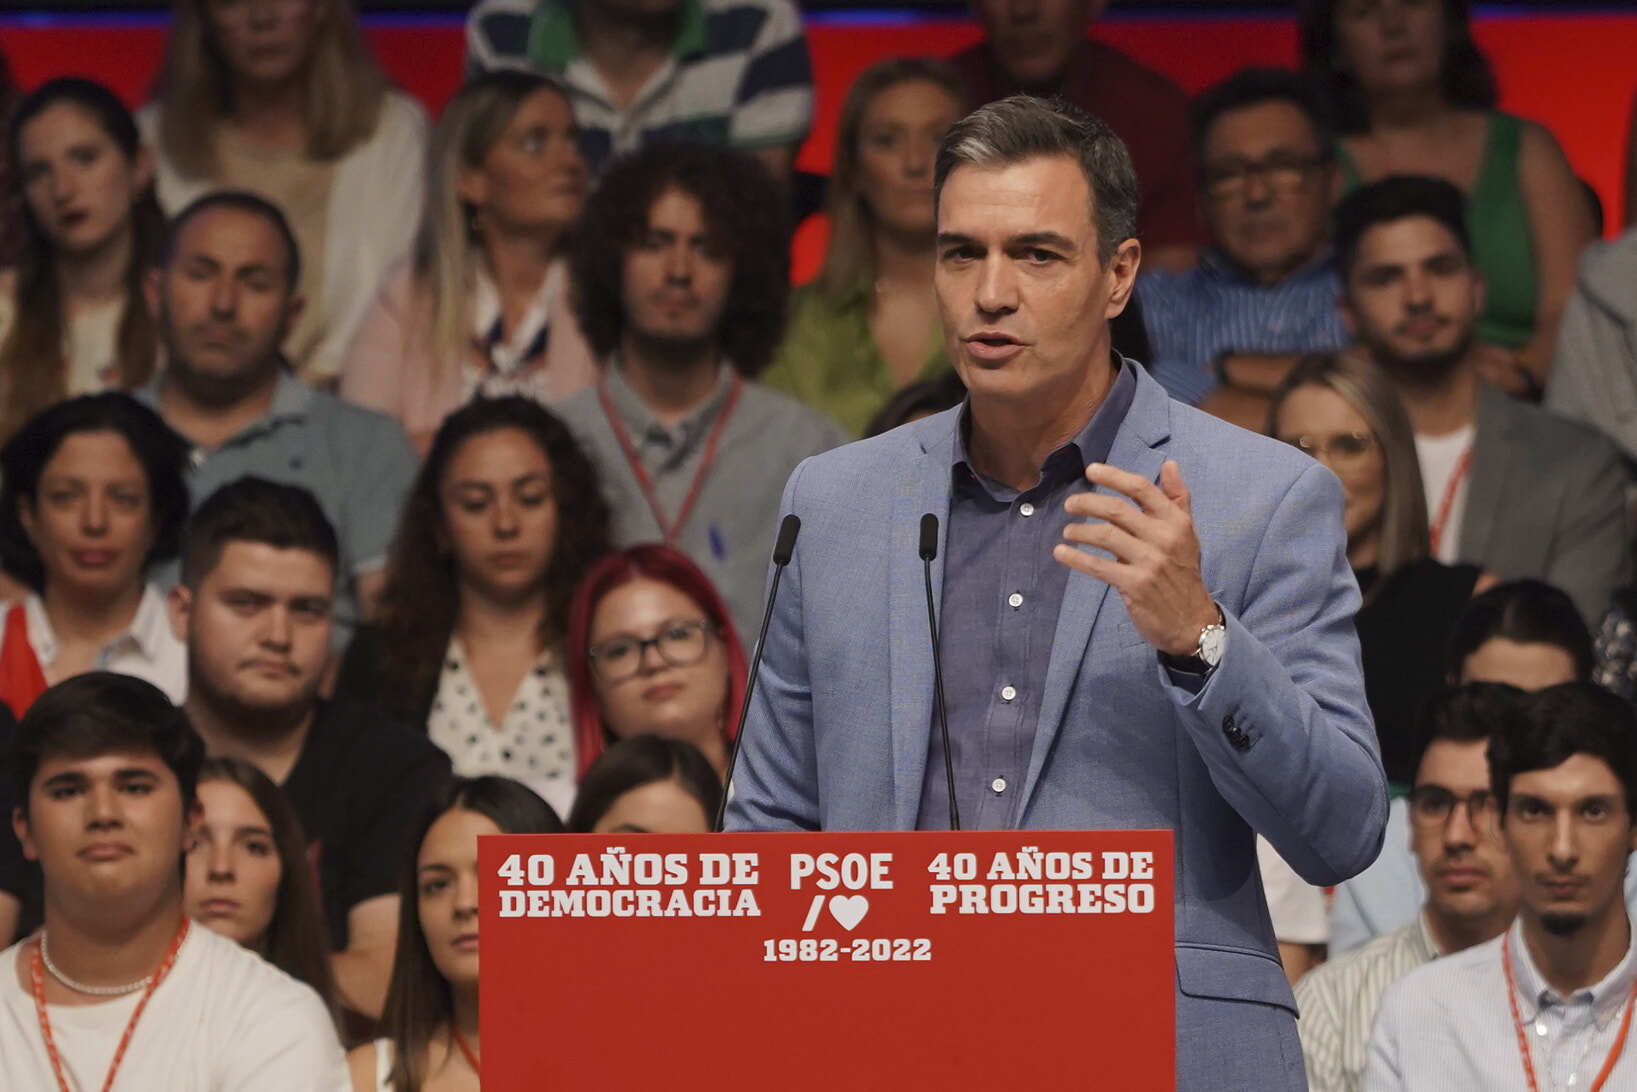 El presidente del gobierno, Pedro Sánchez, durante acto público organizado por el PSOE para conmemorar el 40 aniversario de la primera victoria electoral socialista en 1982. EP.